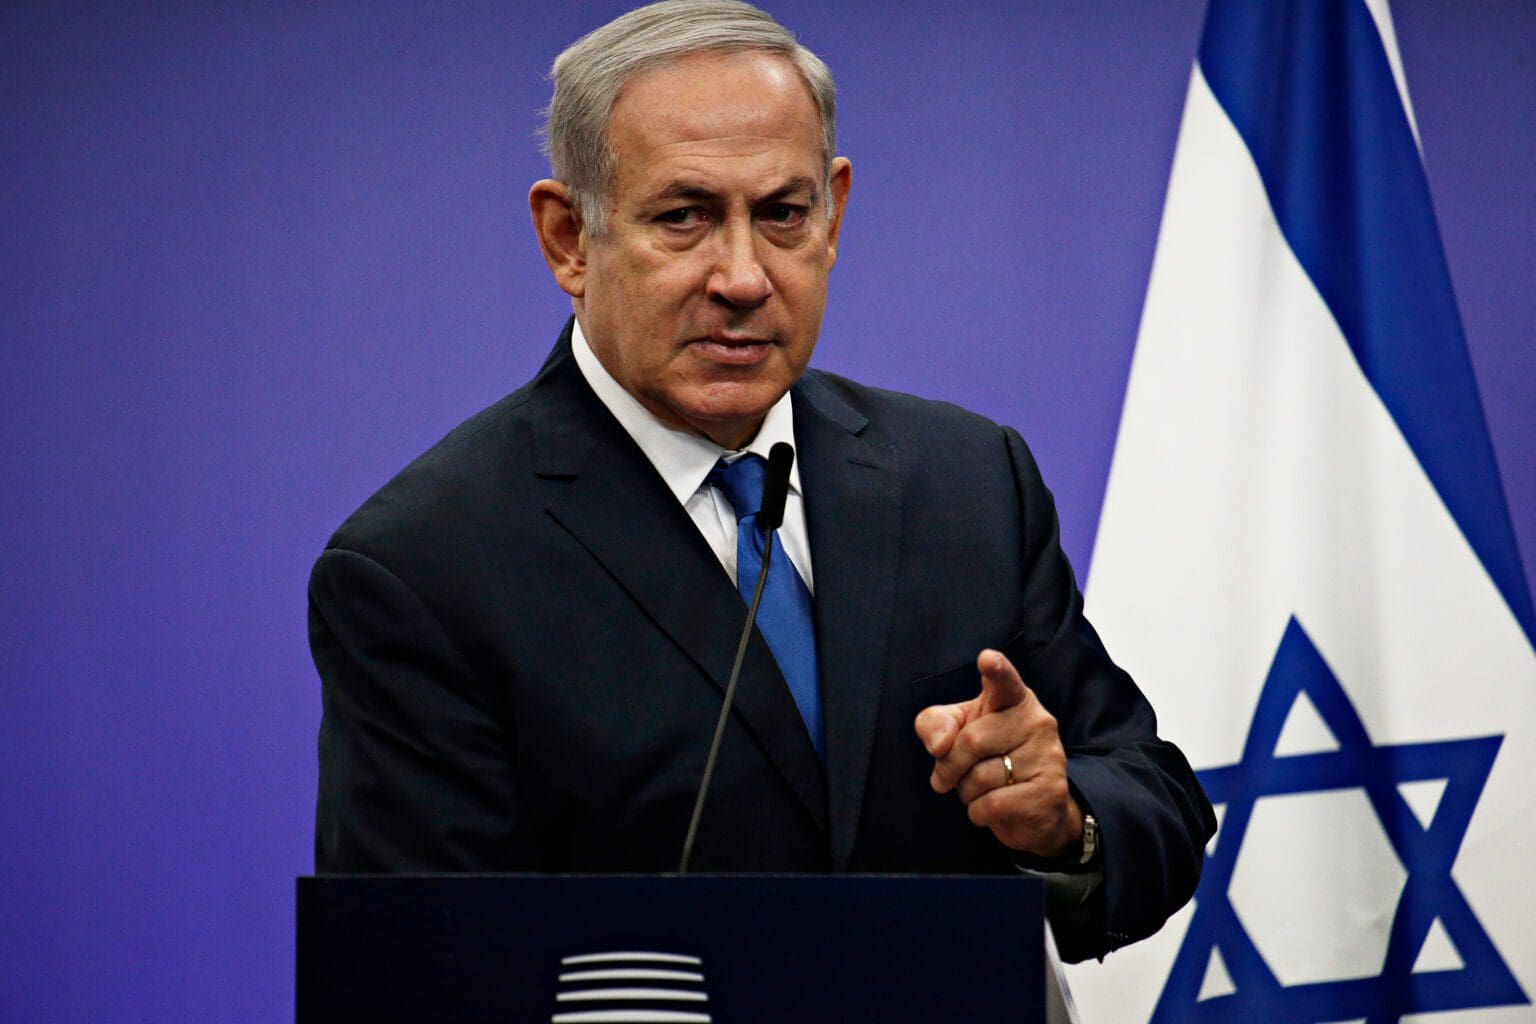 Benjamin Netanyahu Set to Be Israel’s Prime Minister Again